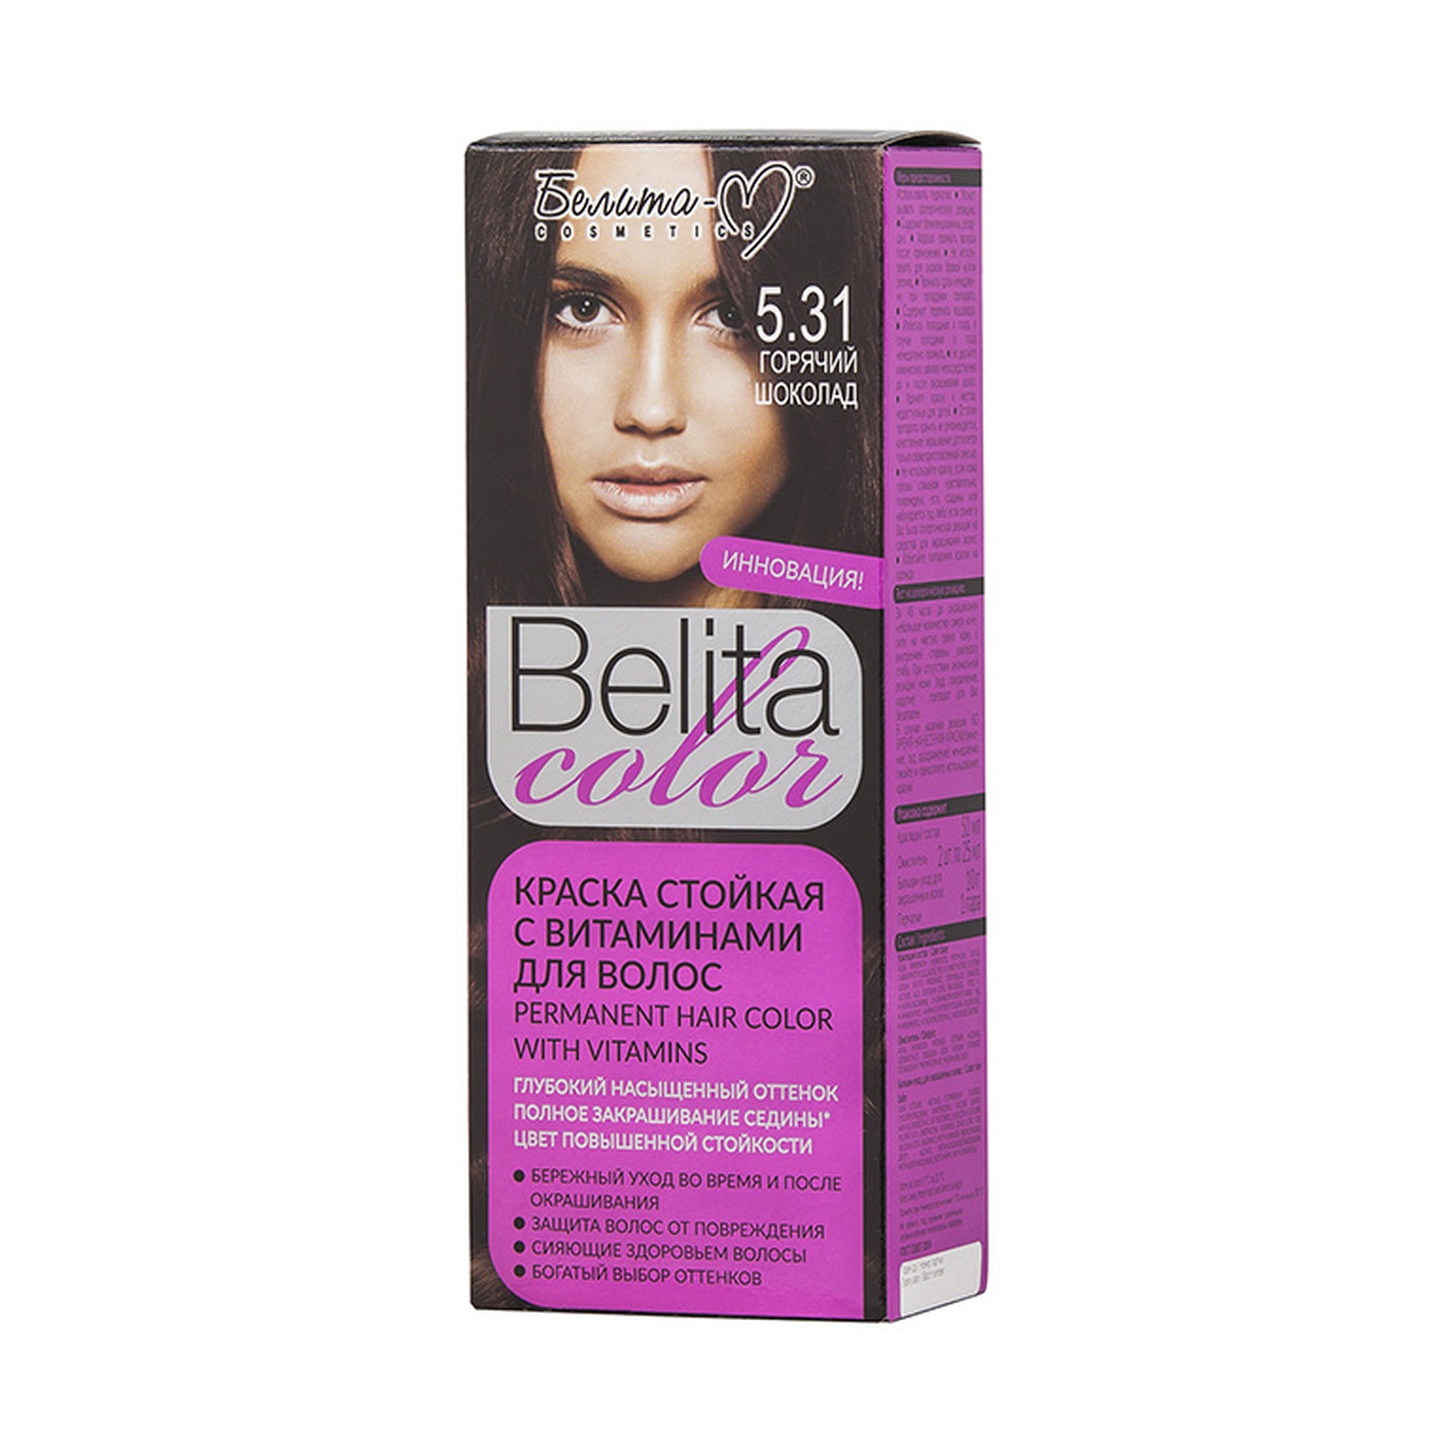 Краска стойкая с витаминами для волос Belita сolor №  5.31 Горячий шоколад /Белита-М /16/ОПТ